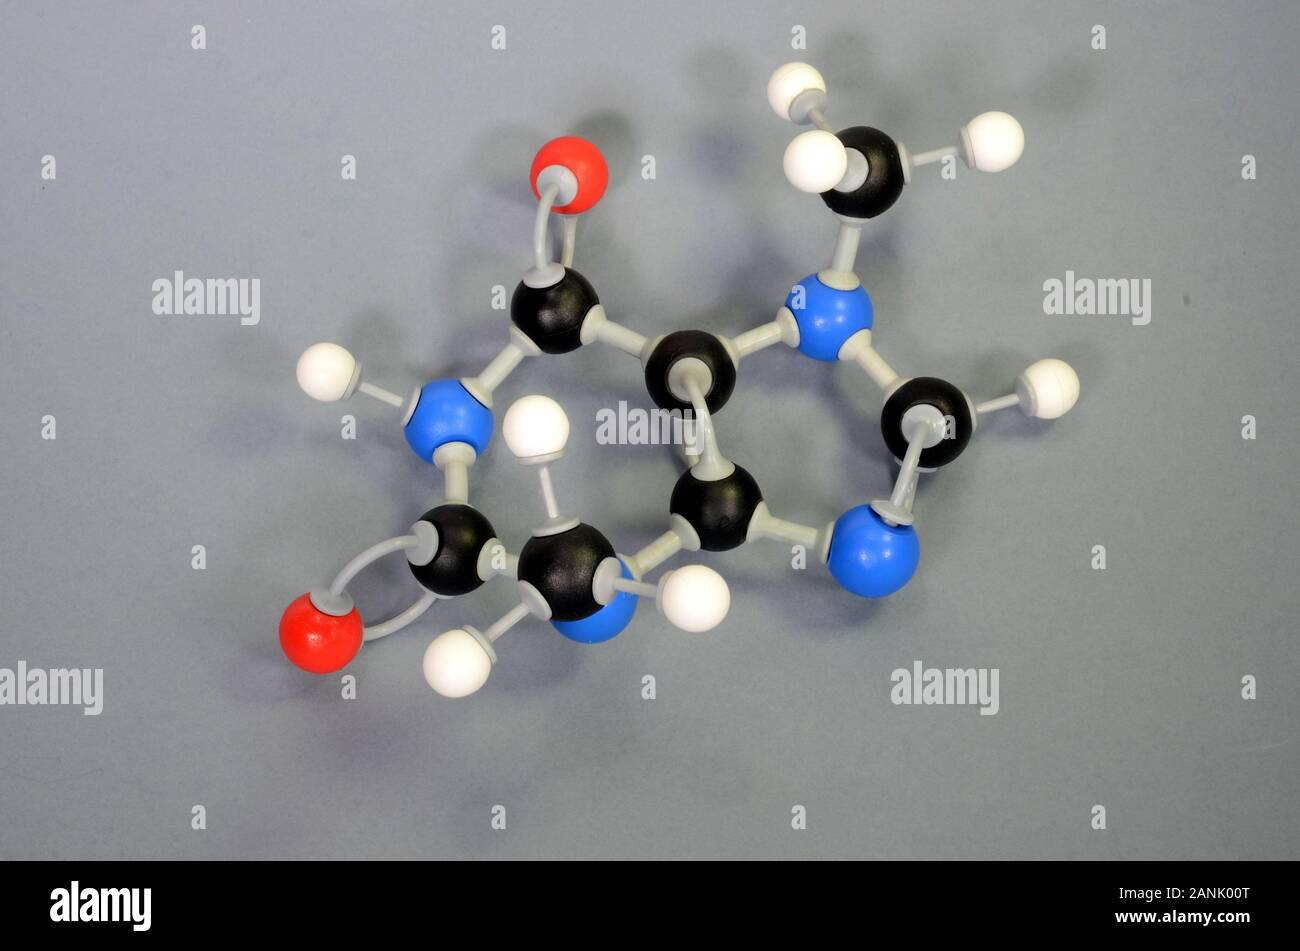 Molécule modèle de théobromine, un élément majeur dans le chocolat. L'hydrogène est blanc, noir de carbone est, le rouge est l'oxygène et l'azote est bleu. Banque D'Images